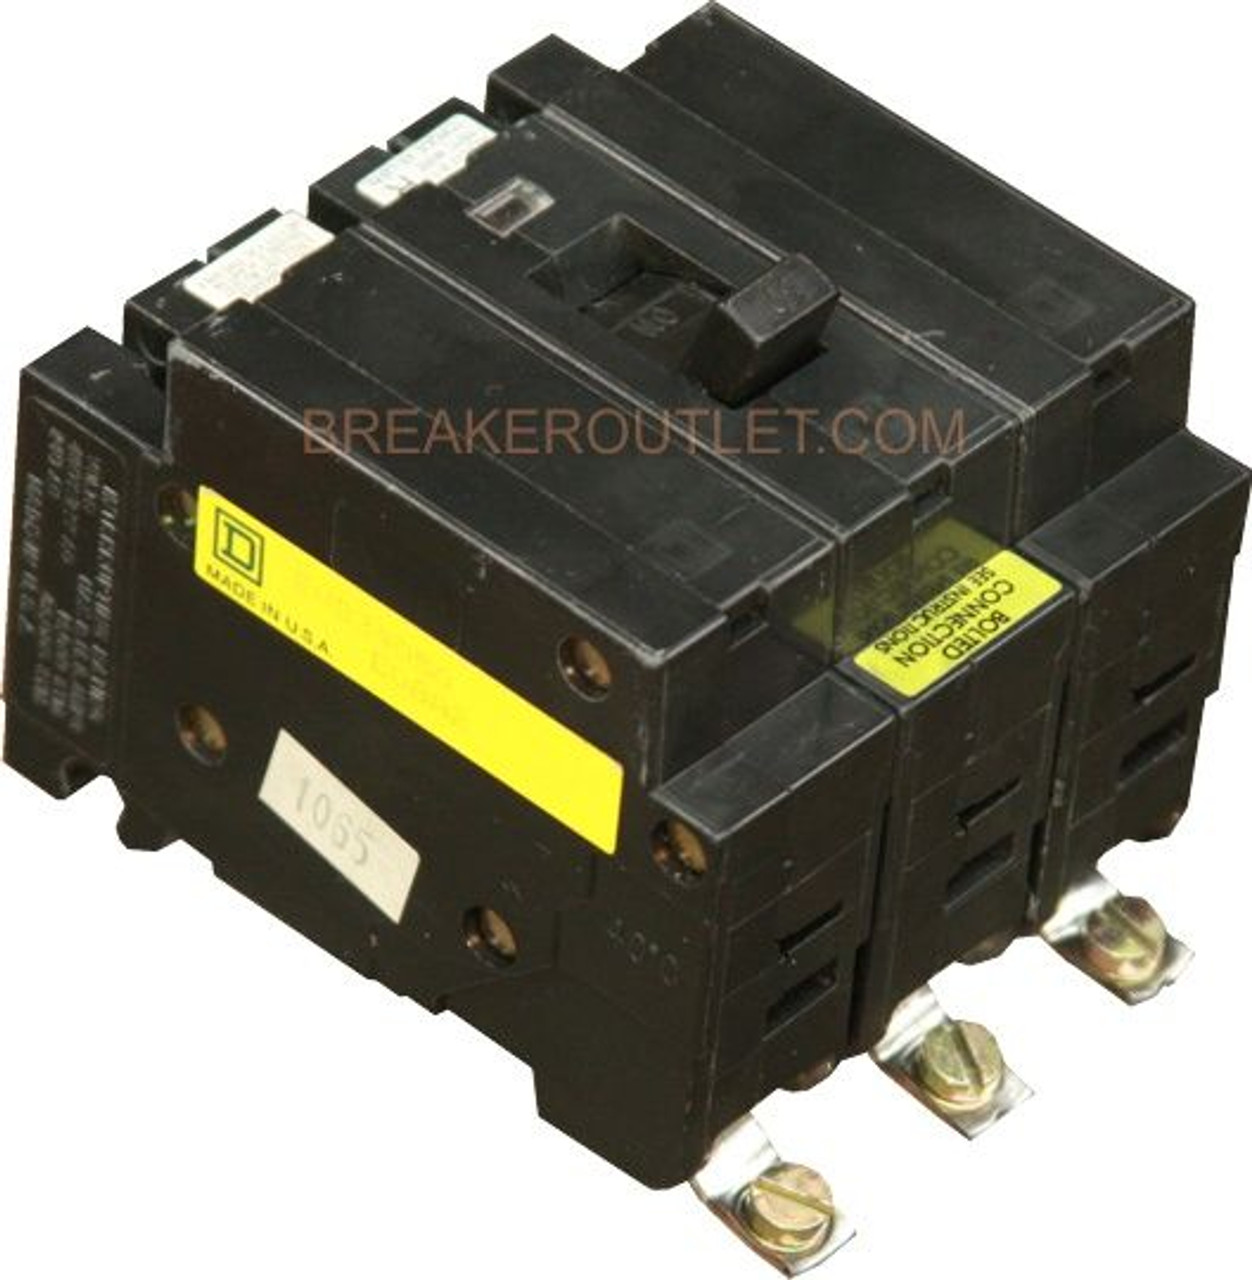 EHB34060 Obsolete Circuit Breaker